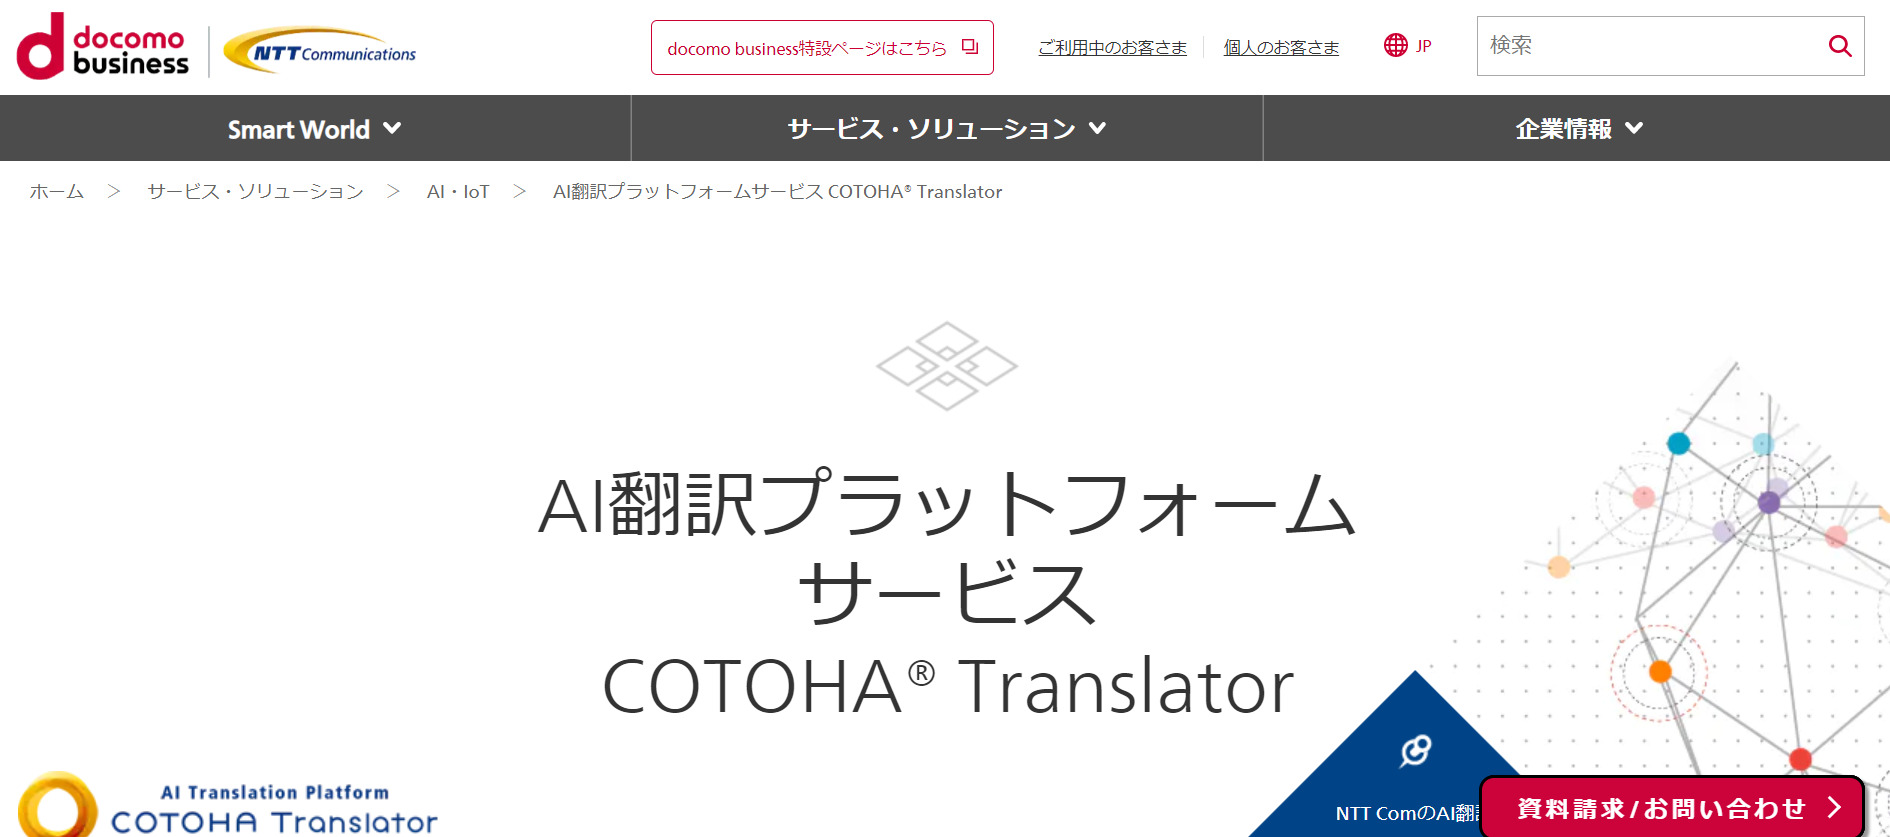 3.COTOHA Translator